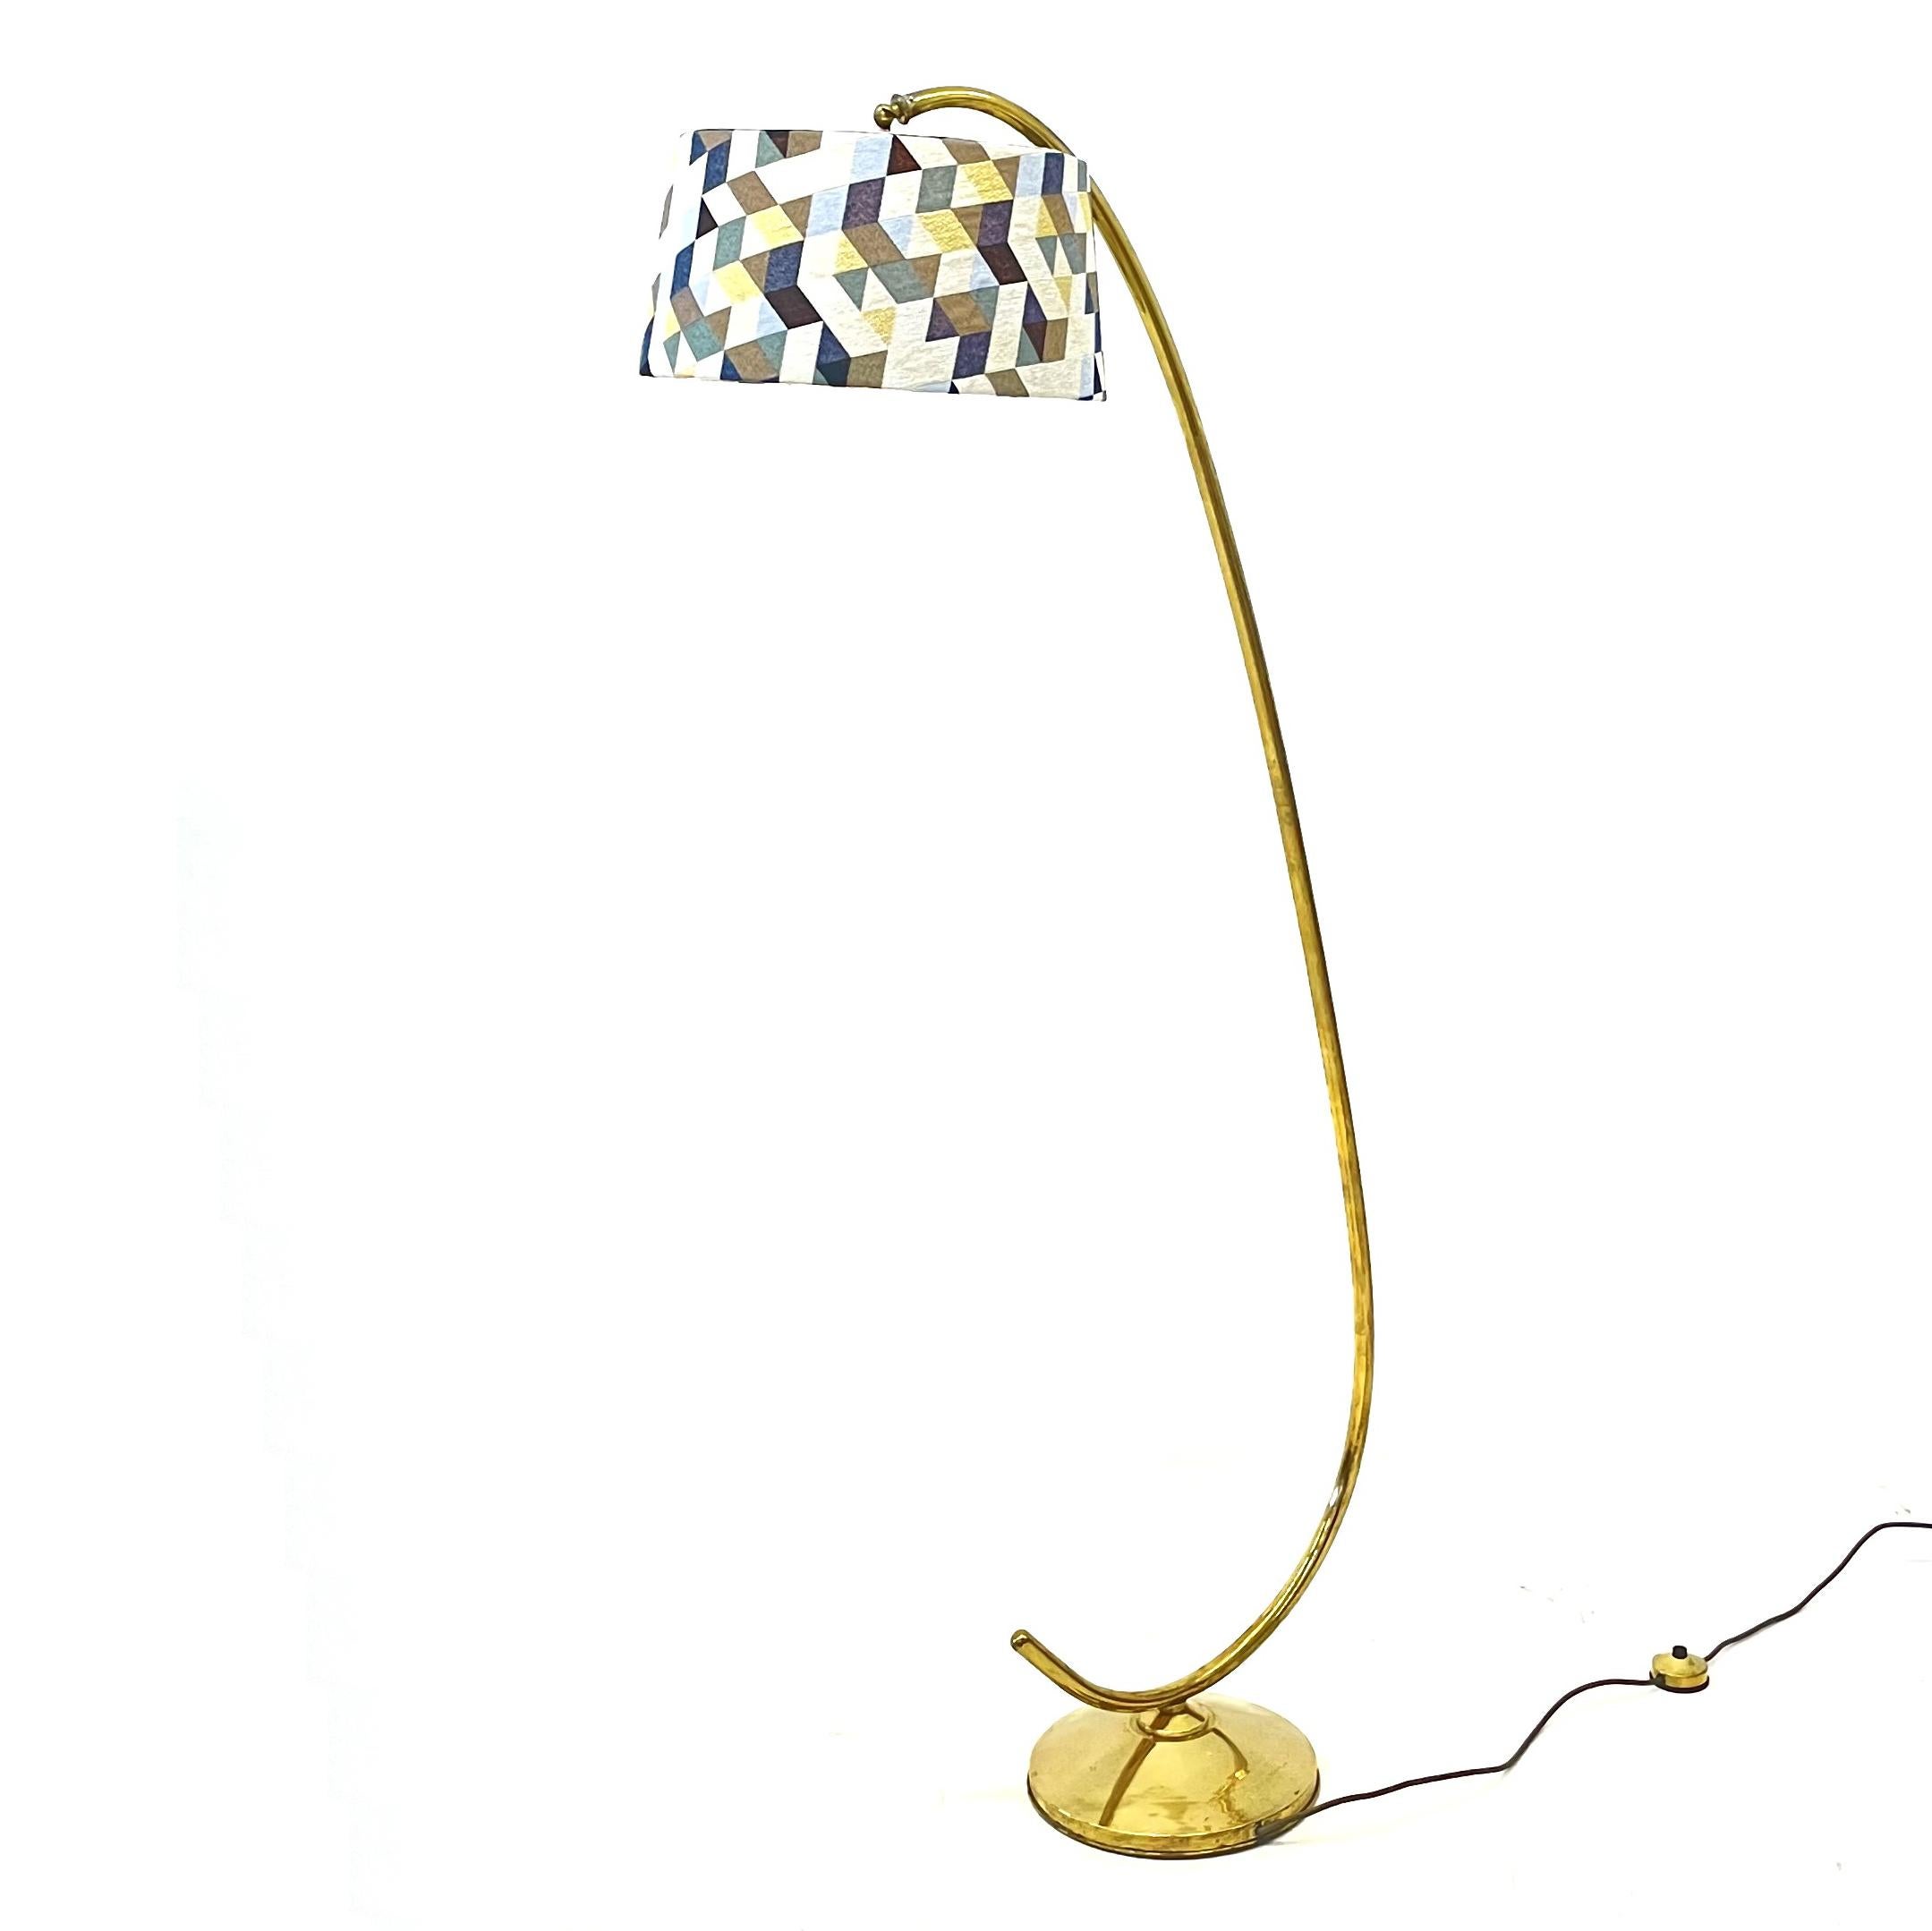 Schöne dänische Stehlampe.
Schirm aus geometrischem Stoff
